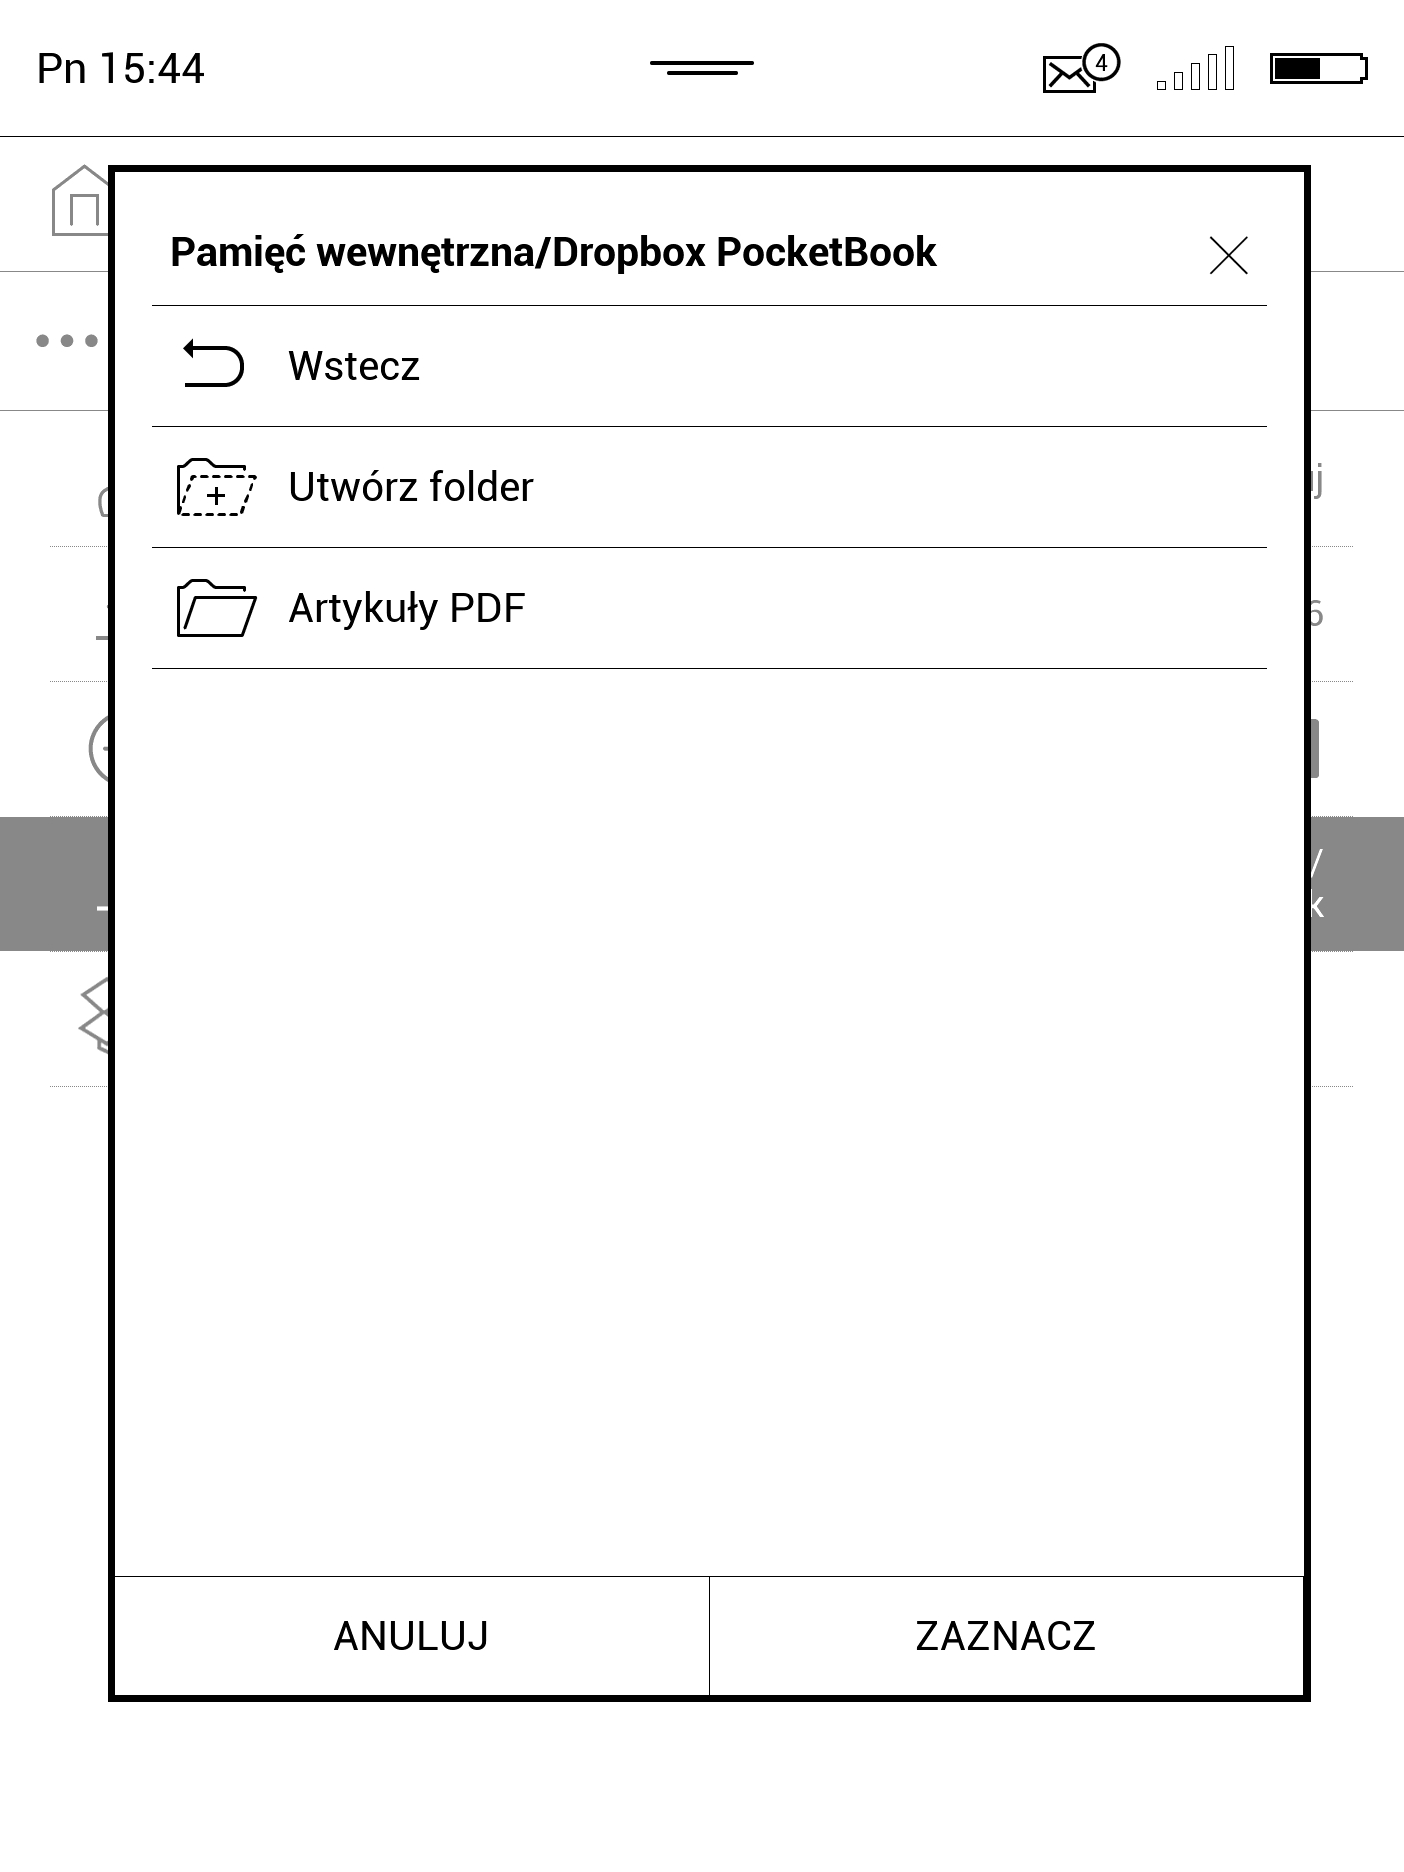 Wybranie folderu pobierania danych z Dropboxa